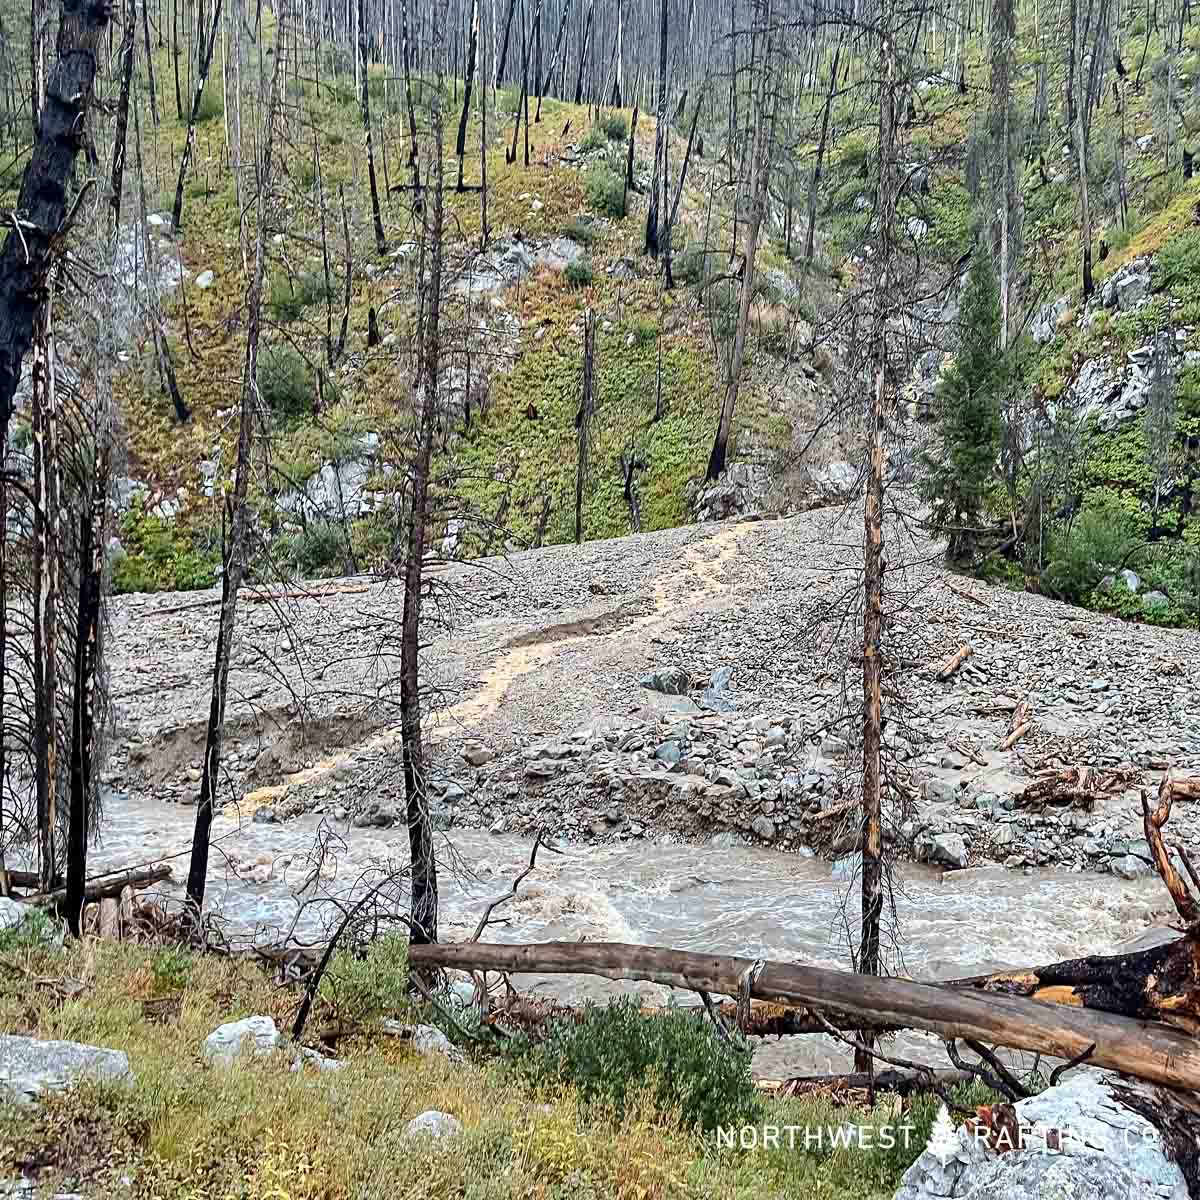 Landslide at entrance of Hells Half Mile